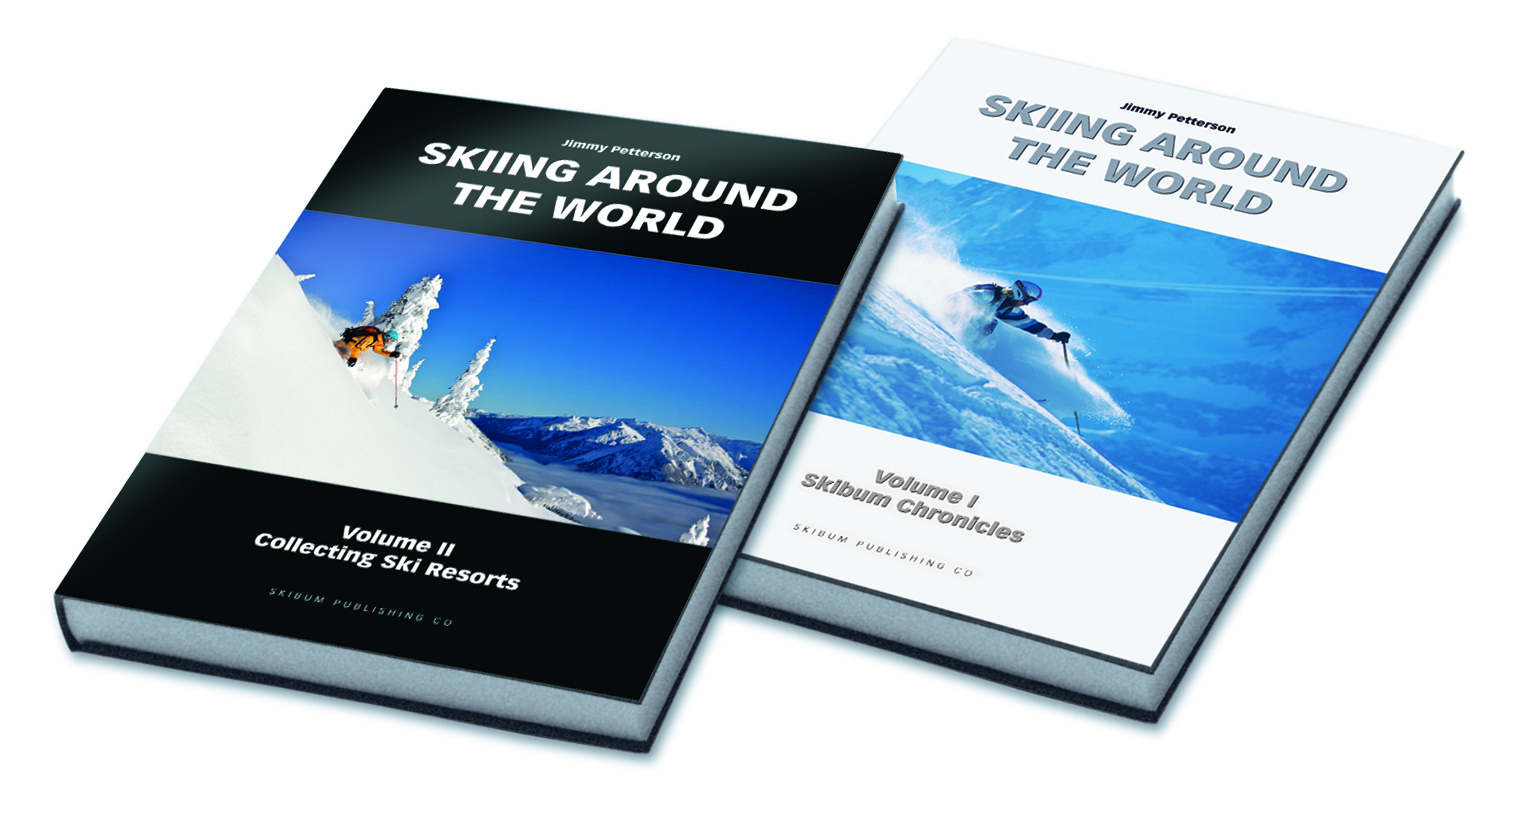 Skiing Around the World